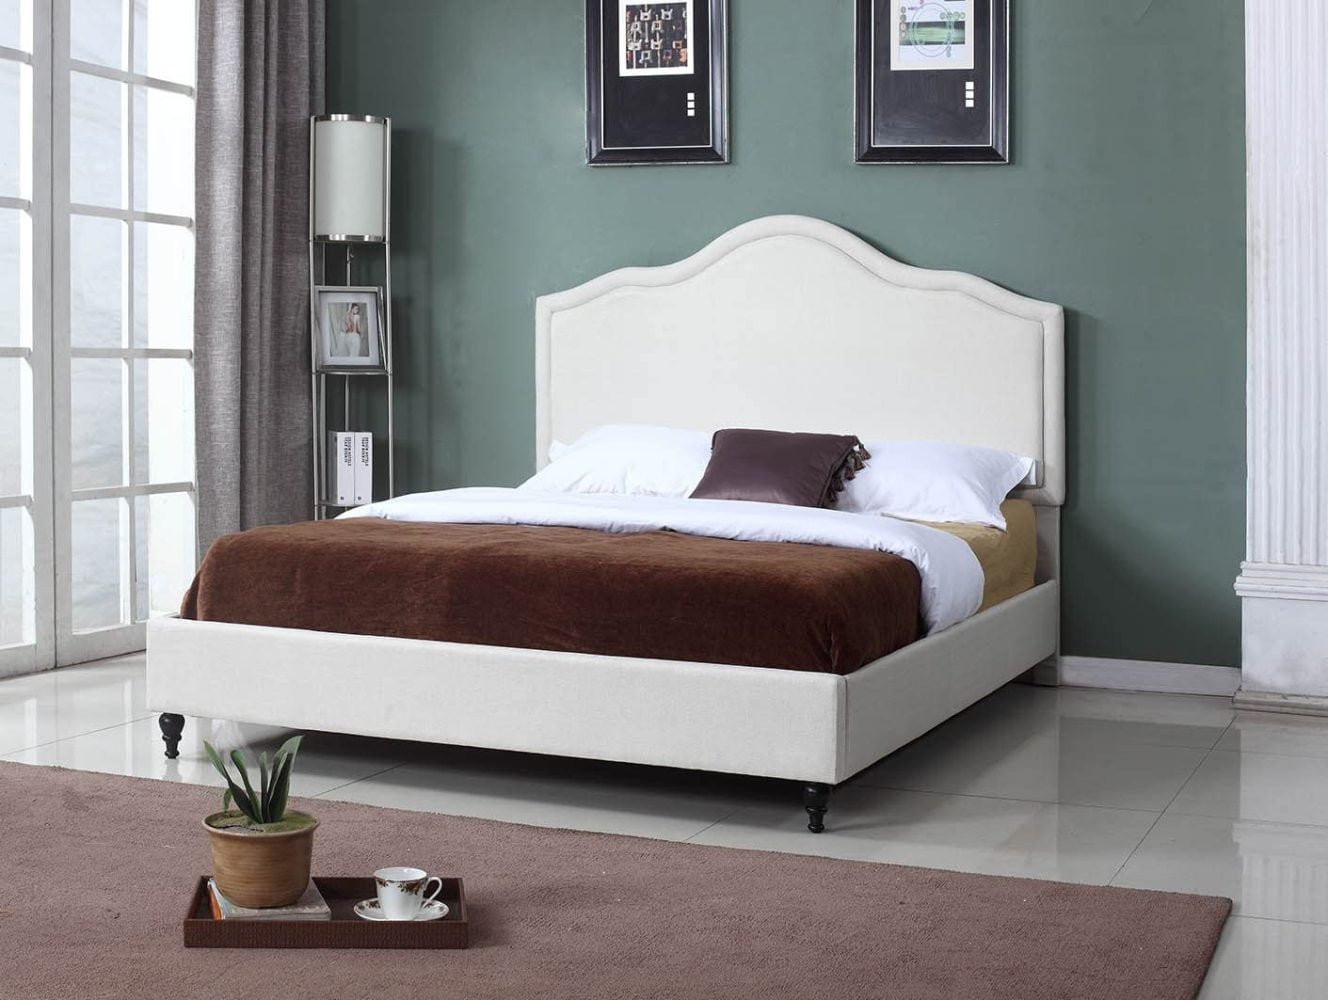 Home Life BLACK Upholstered Platform Bed Frame & Slats Modern  Home ALL SIZES 